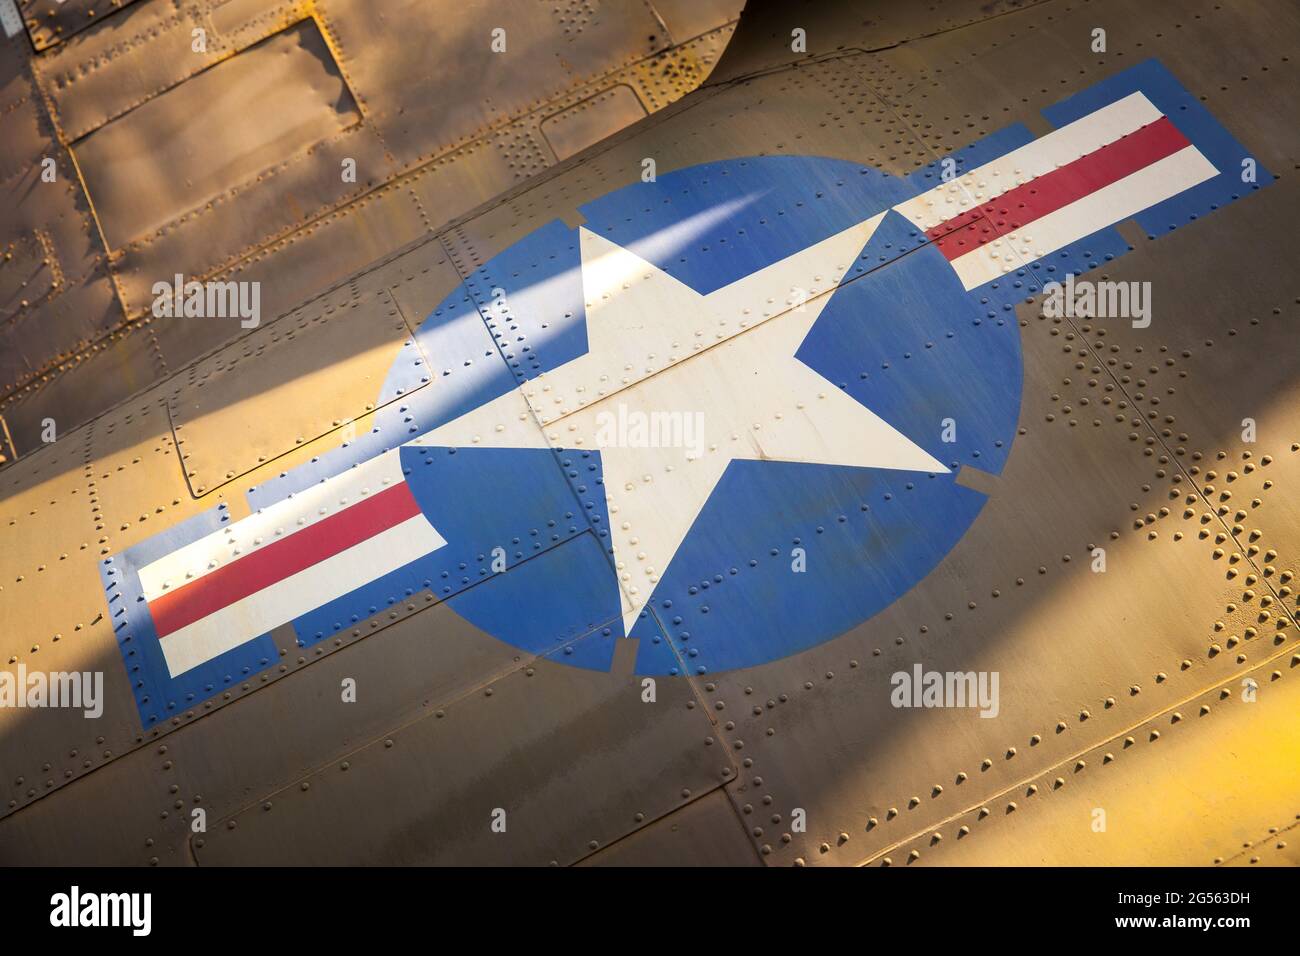 DIE STARS und Streifen DER US Air Force sind auf der Seite alter Militärflugzeuge aus der Nähe zu sehen Stockfoto